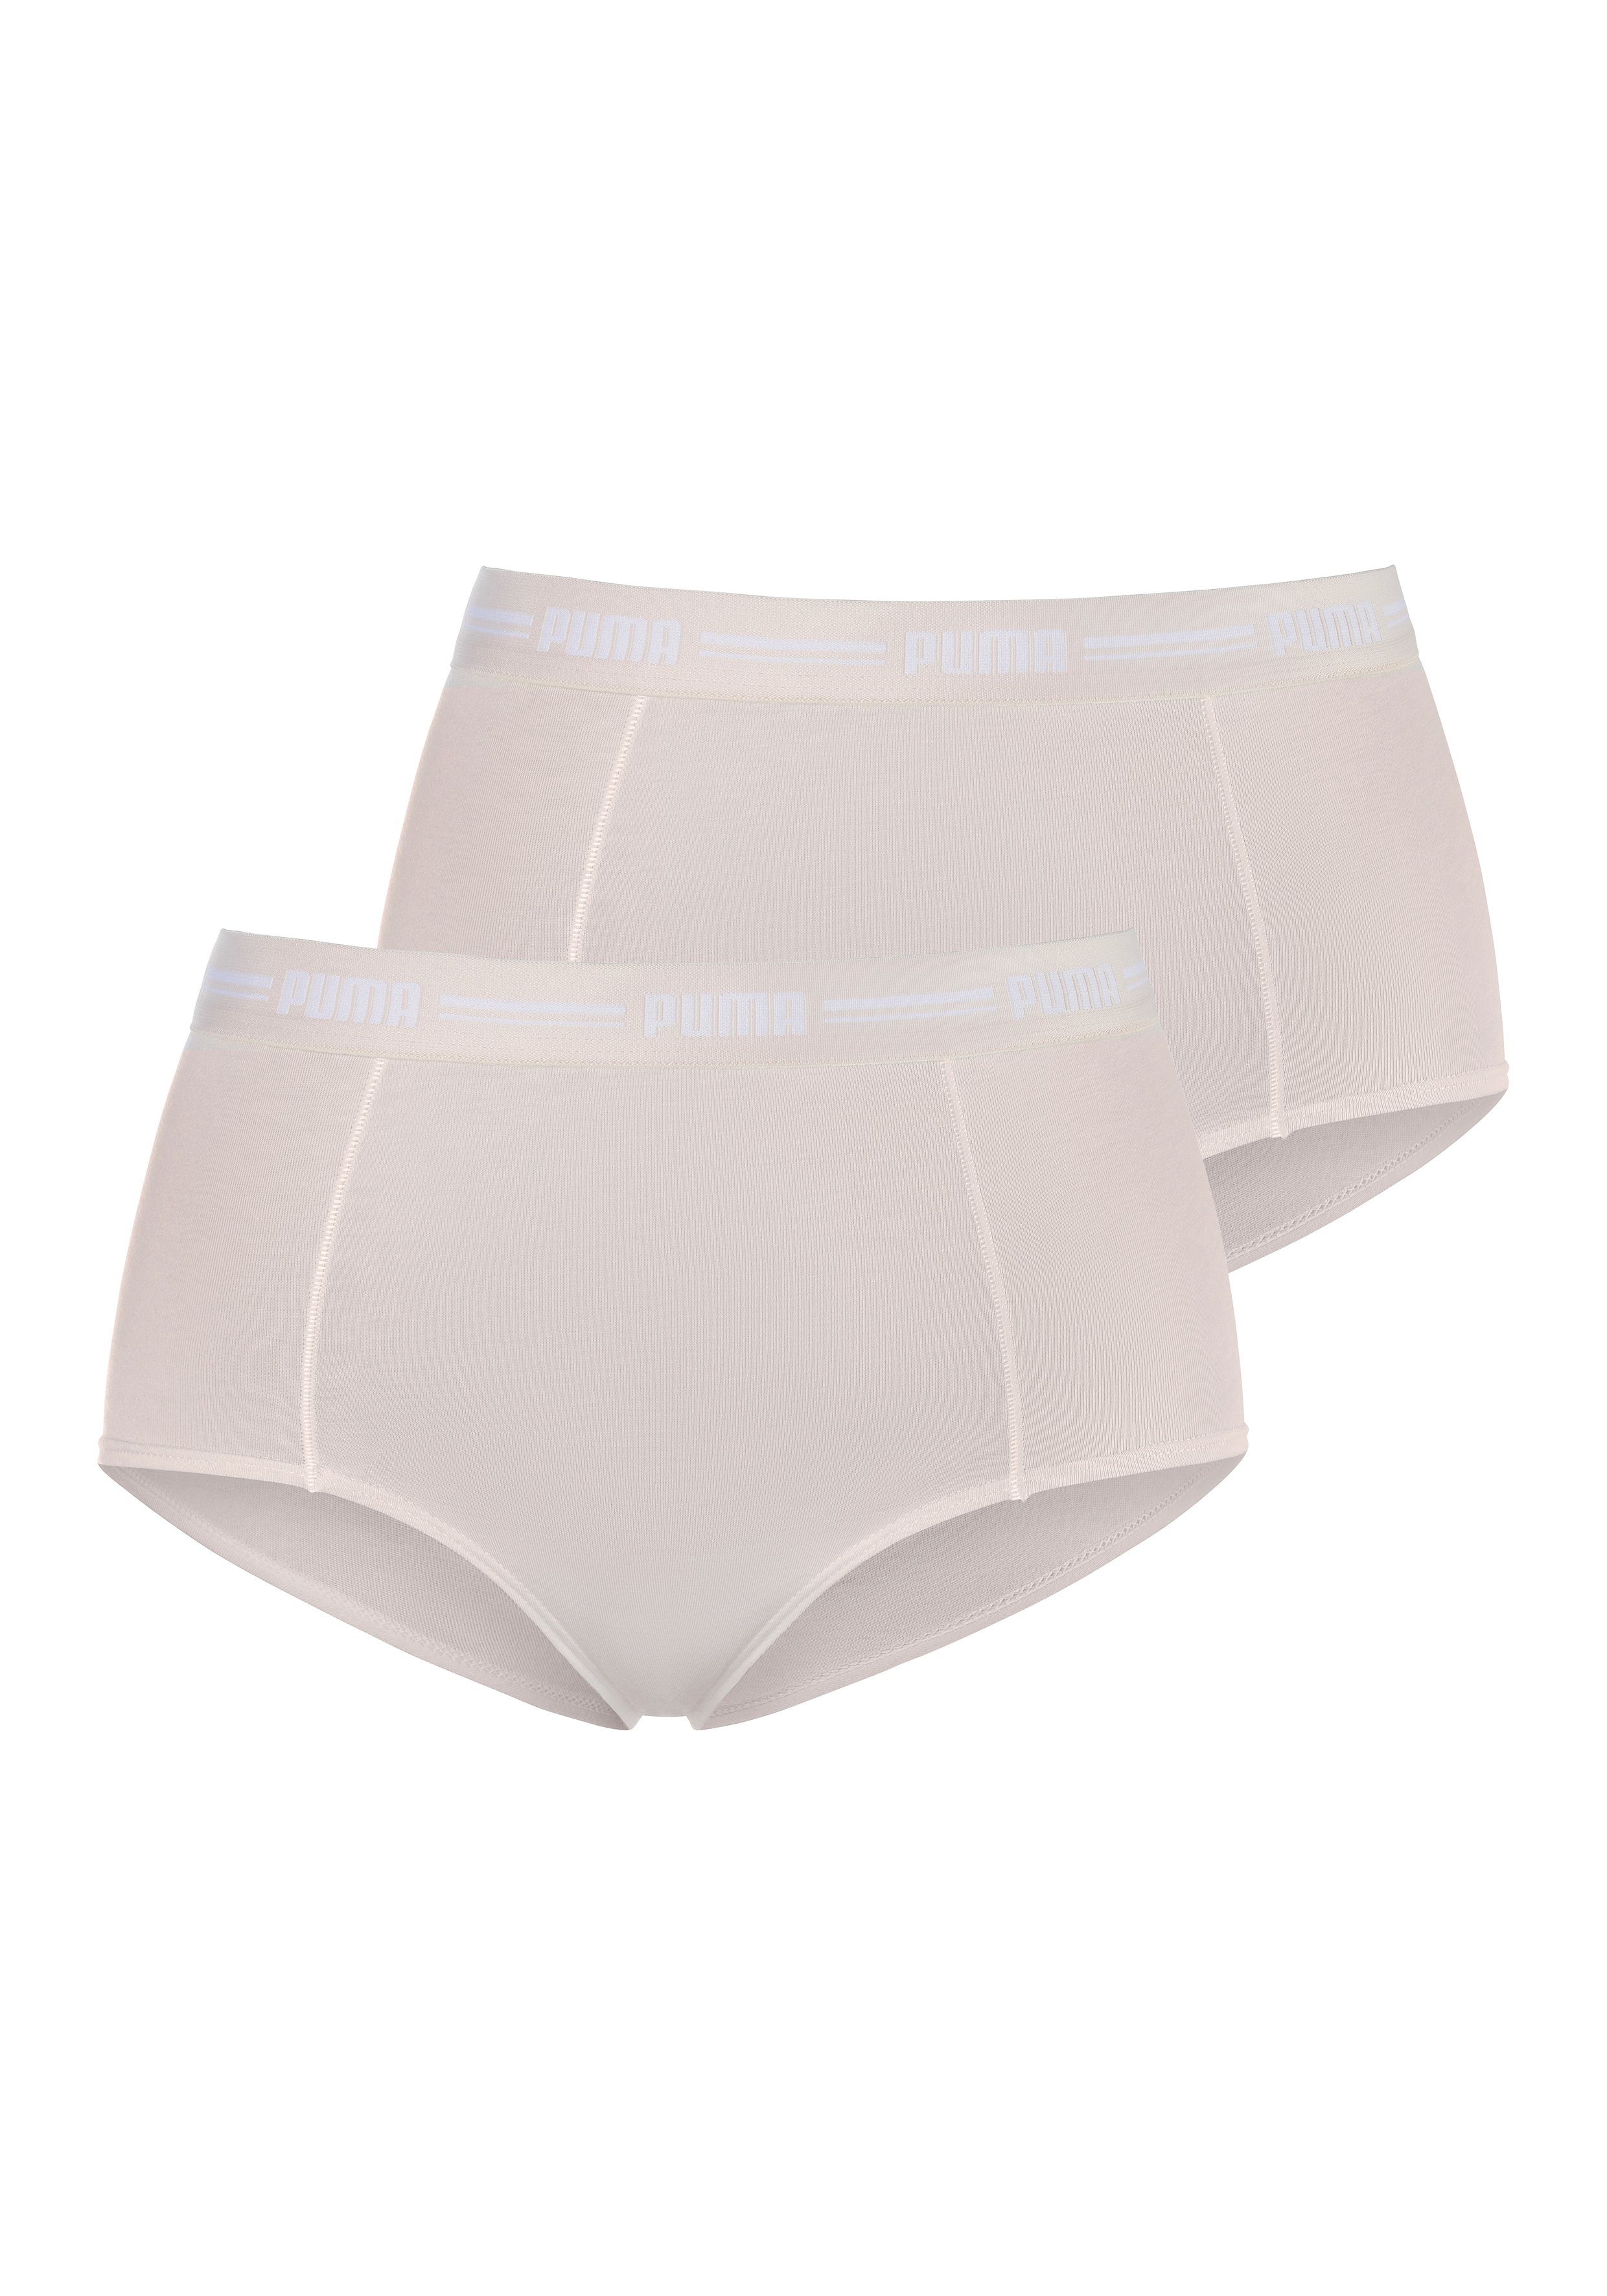 PUMA Panty »Iconic« (2 Stück), Elastisches Bündchen mit Logoschriftzug  online kaufen | OTTO